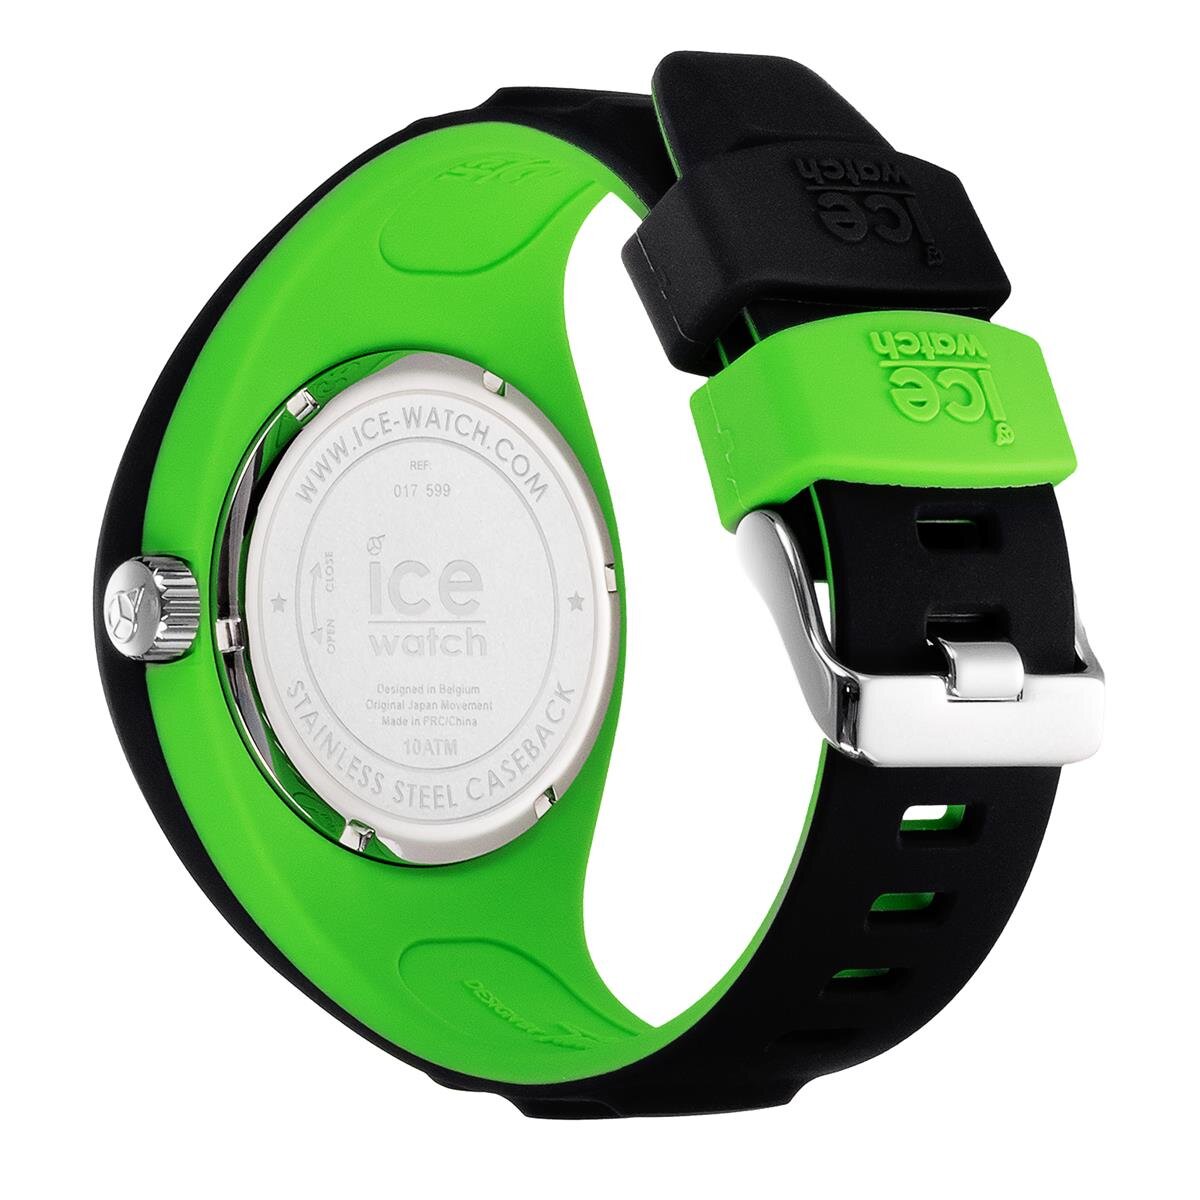 017599 | Ice-Watch Herren Uhr P. Leclercq 017599 Black green